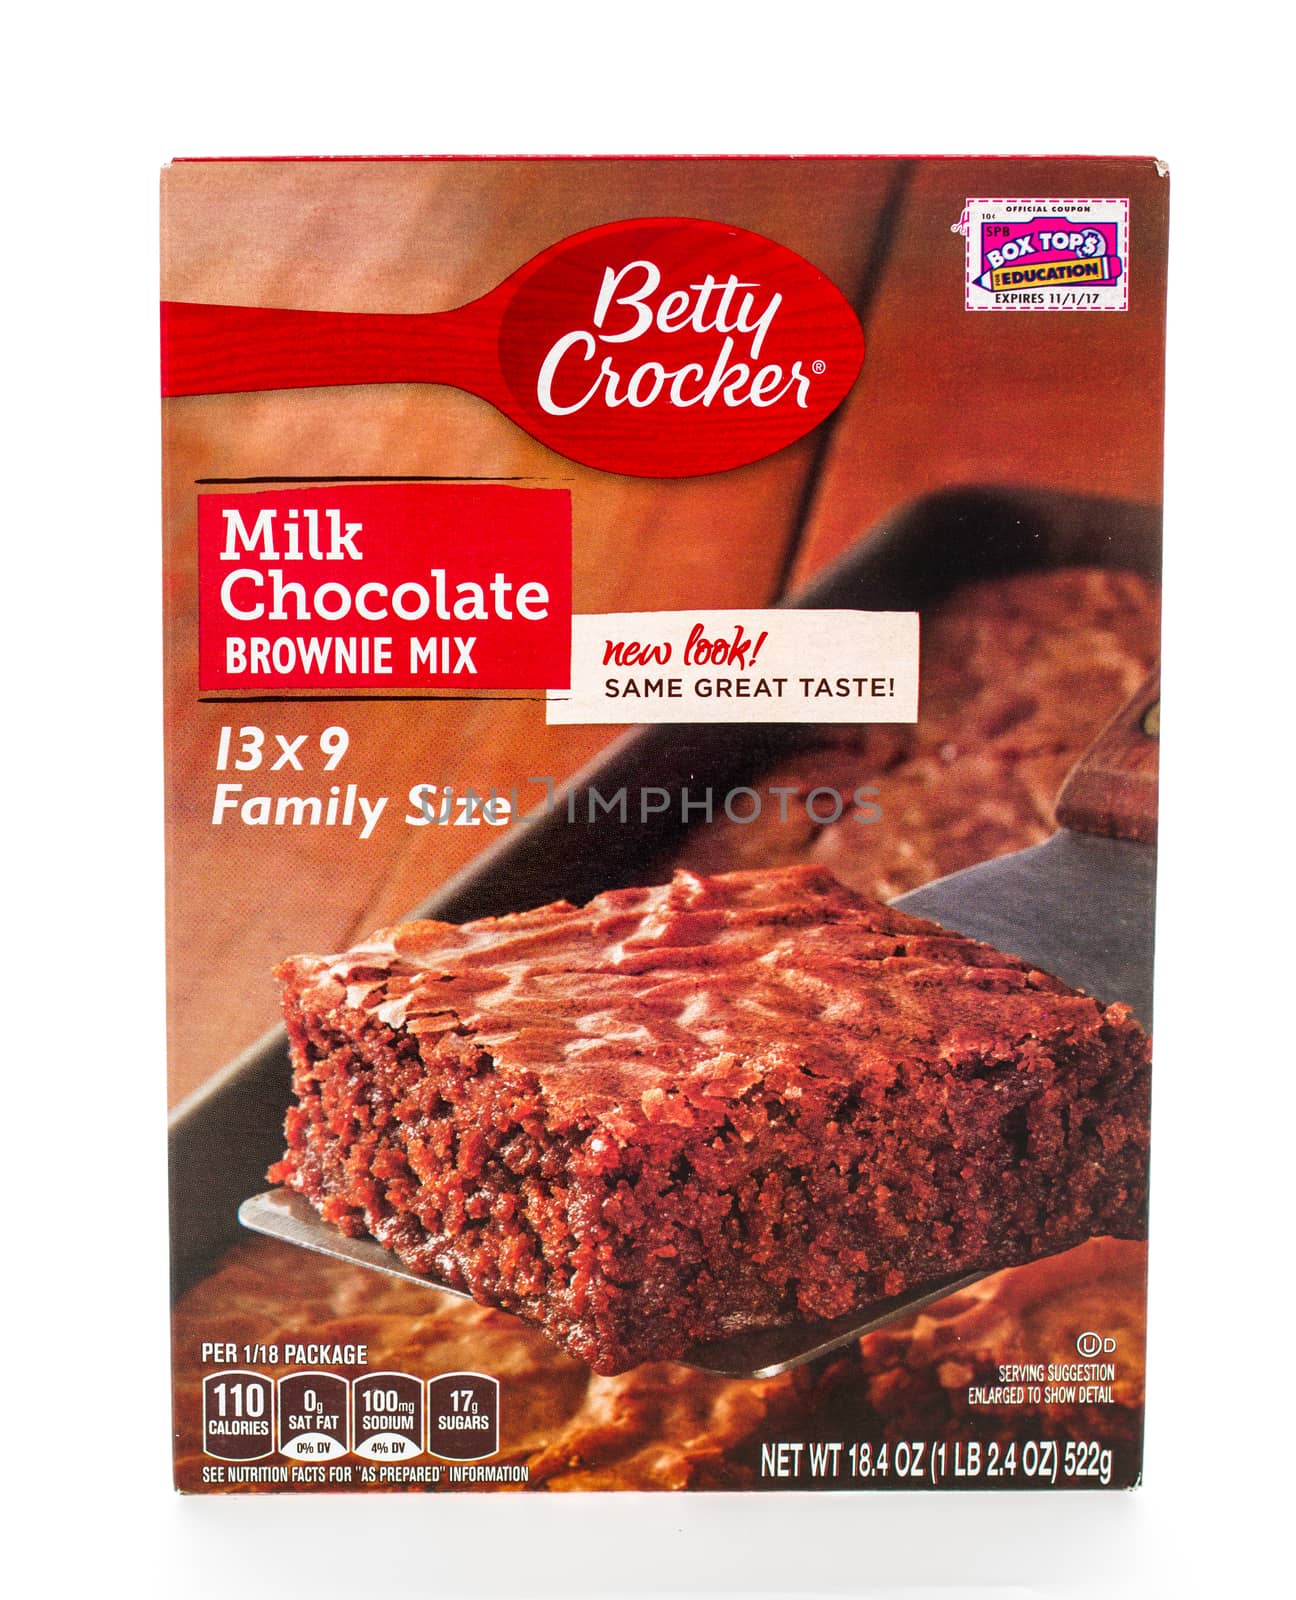 Winneconne, WI - 8 February 2015: Box of Betty Crocker Milk Chocolate Brownie Mix.